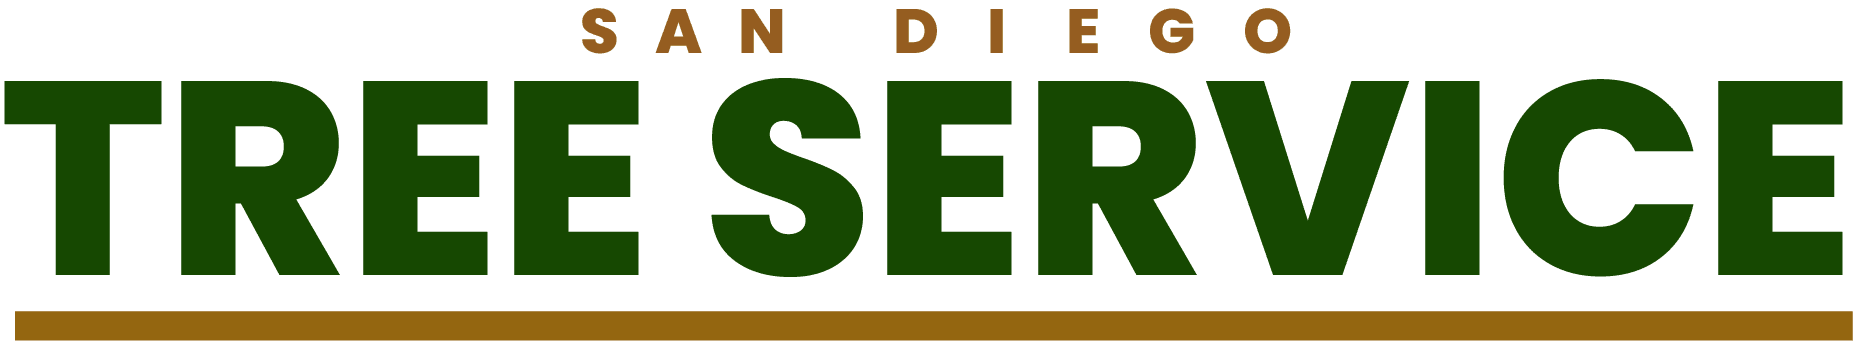 San Diego Tree Service Logo